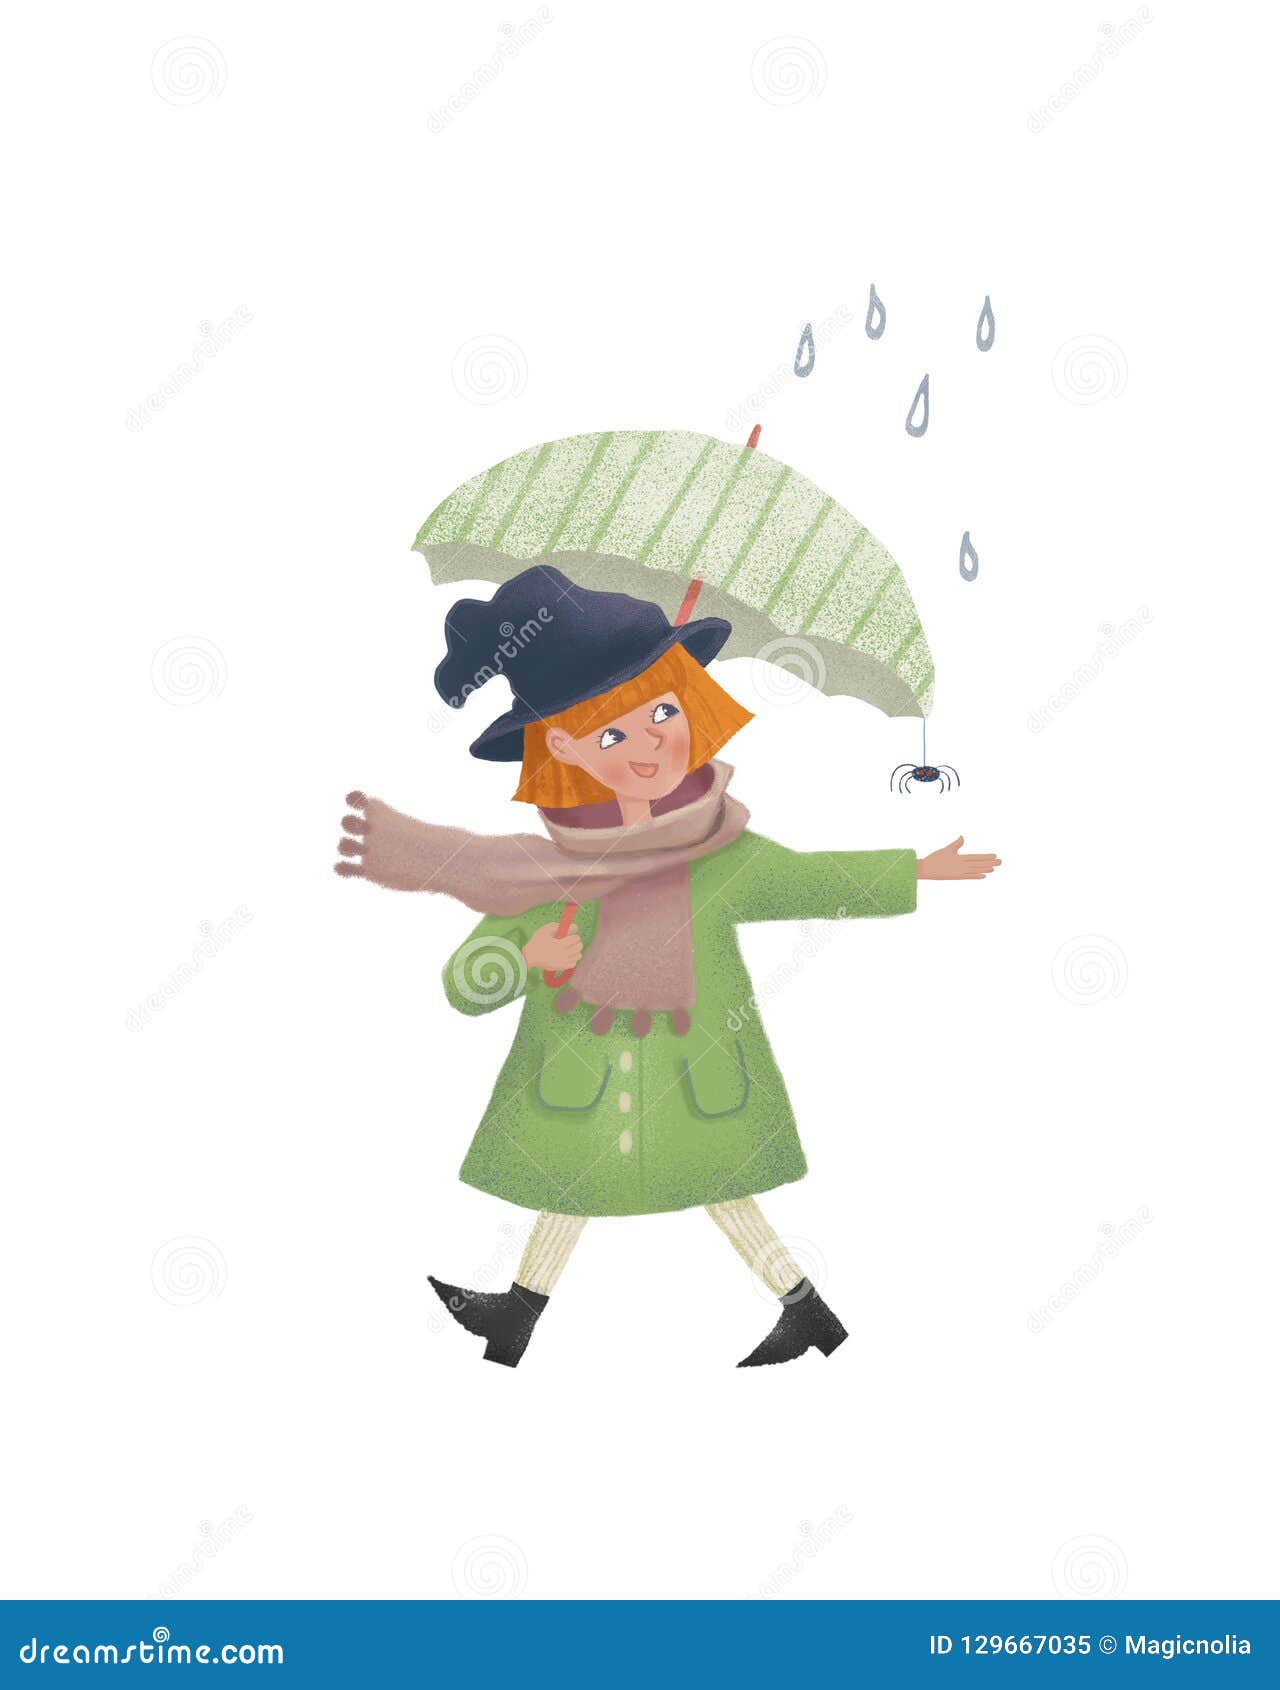 Kreskówki Mała czarownica w deszczu z parasolem Śliczni raster charakteru illustation jako druk pocztówka i projekt ludzie Raster odosobniona ilustracja